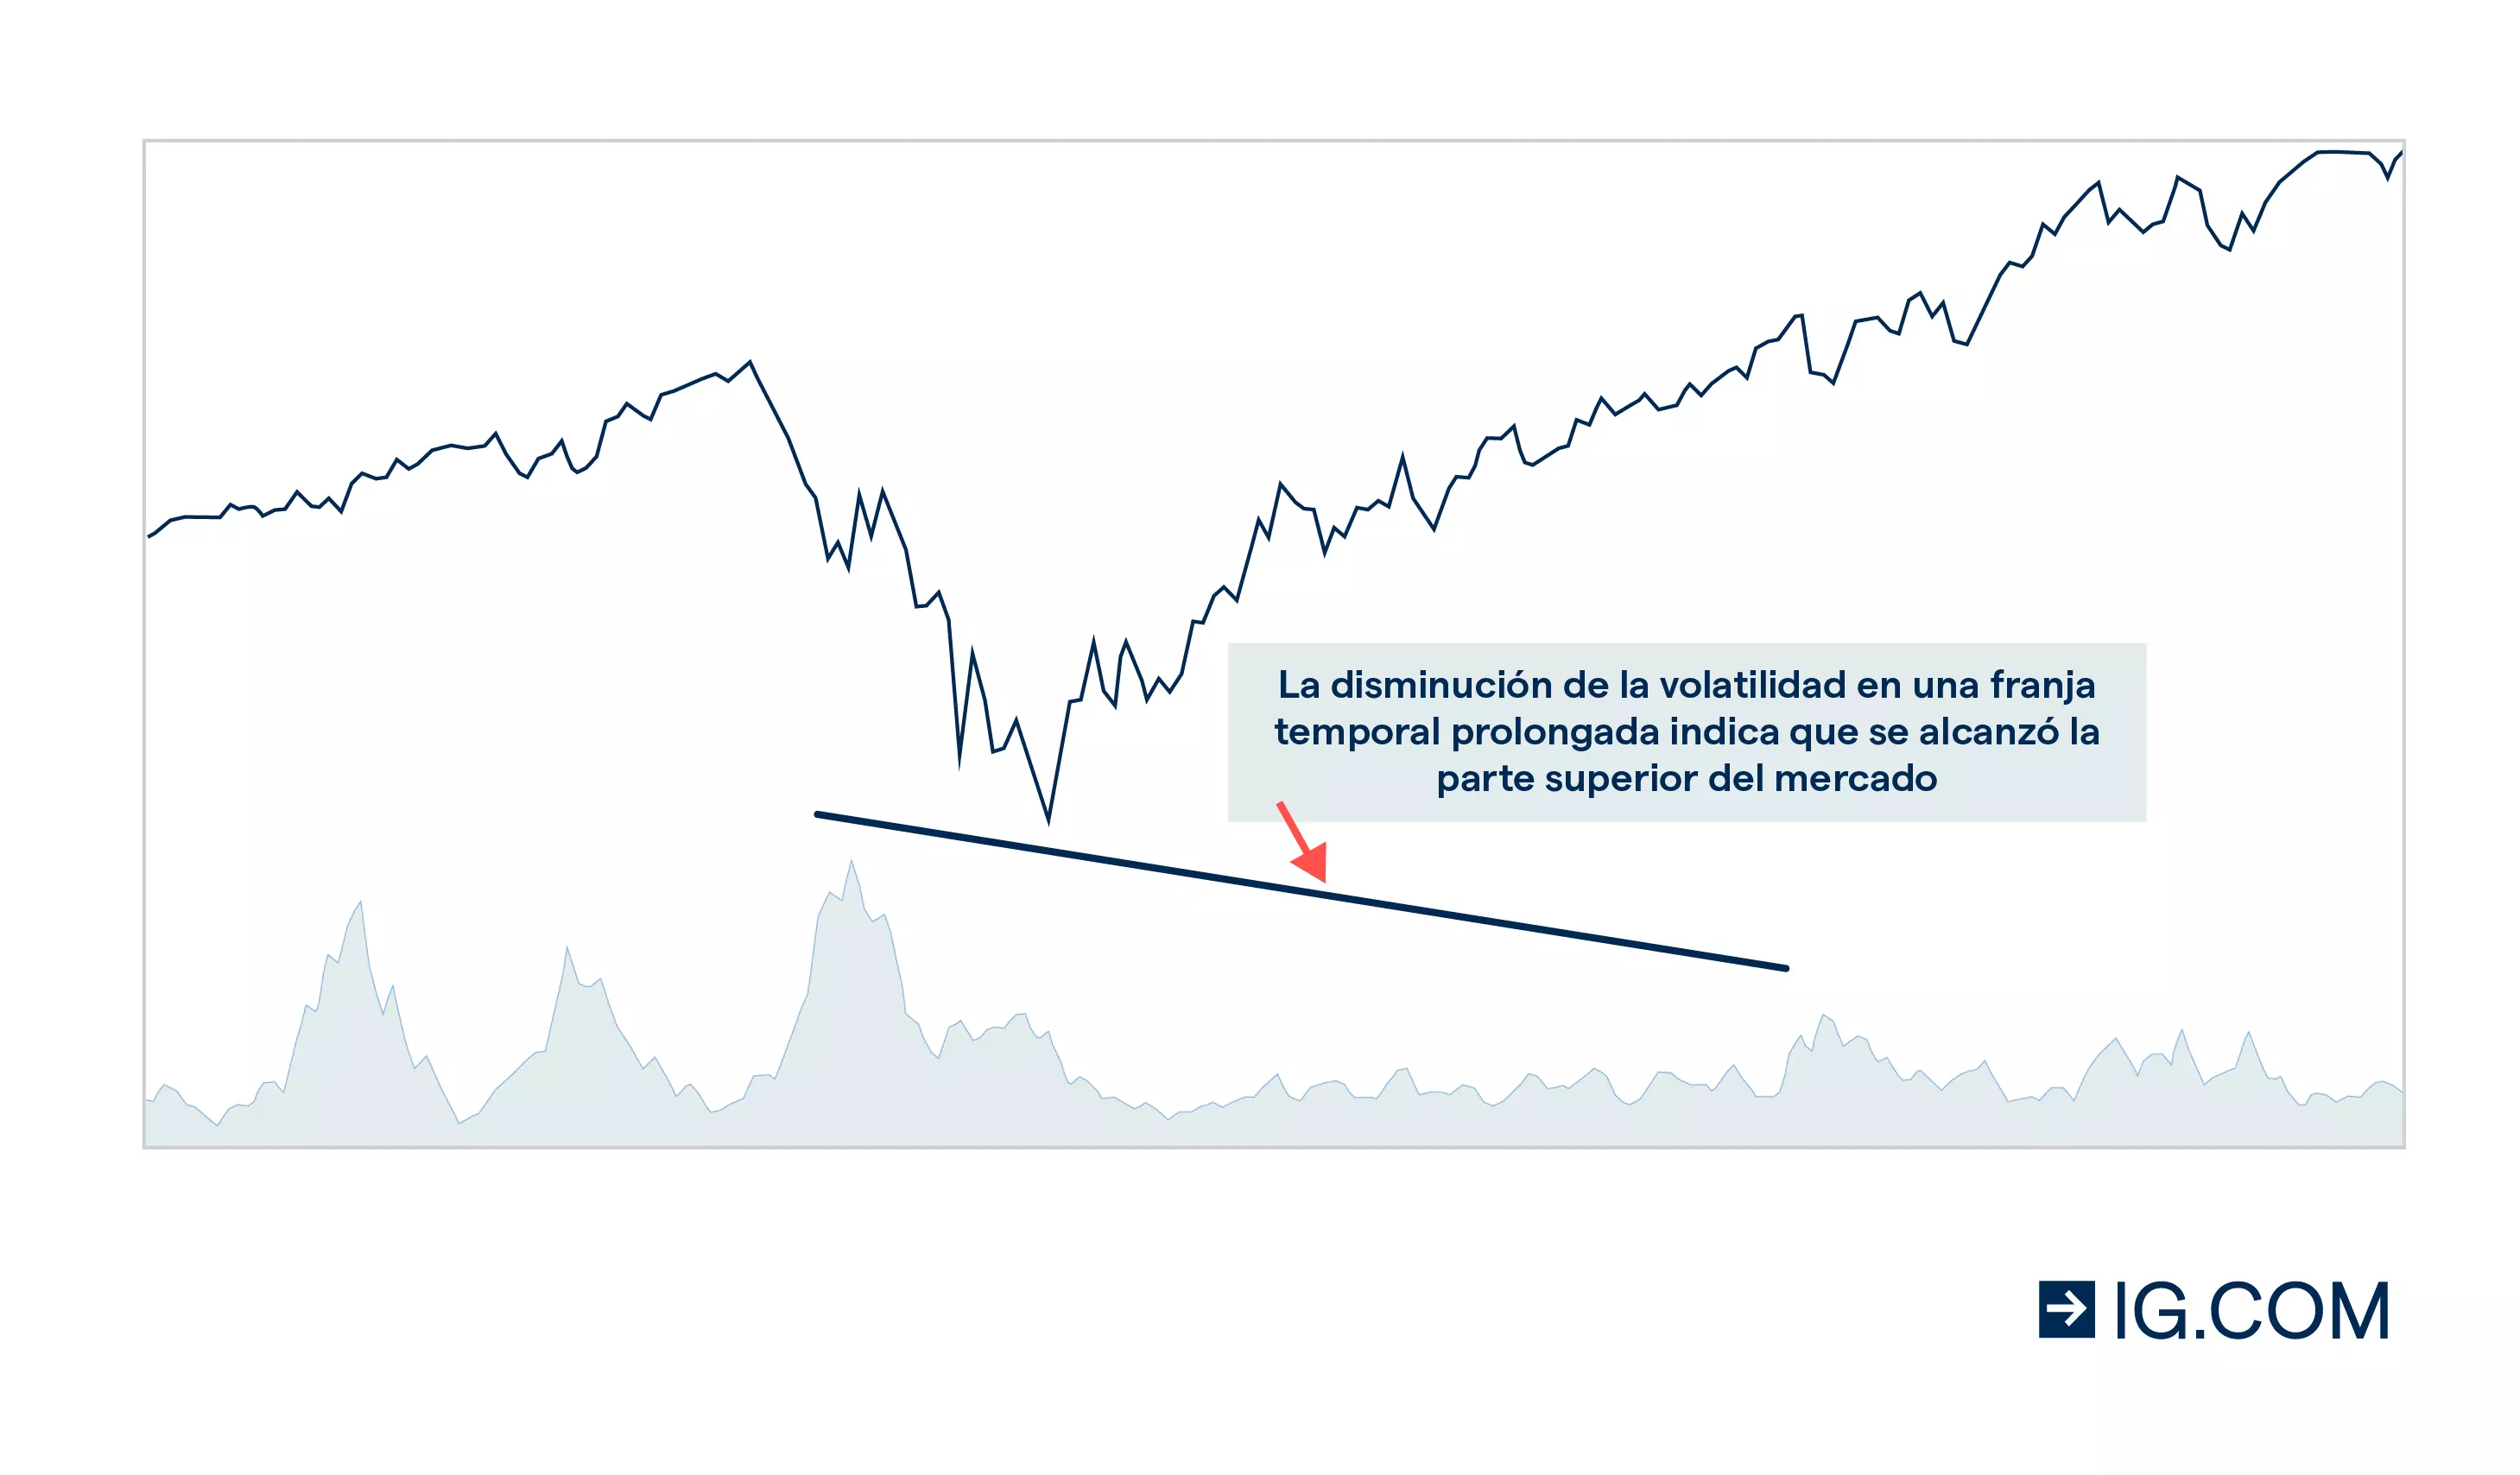 Gráfico del indicador de volatilidad de Chaikin que muestra una volatilidad decreciente en un horizonte temporal a largo plazo, lo que indica un máximo del mercado